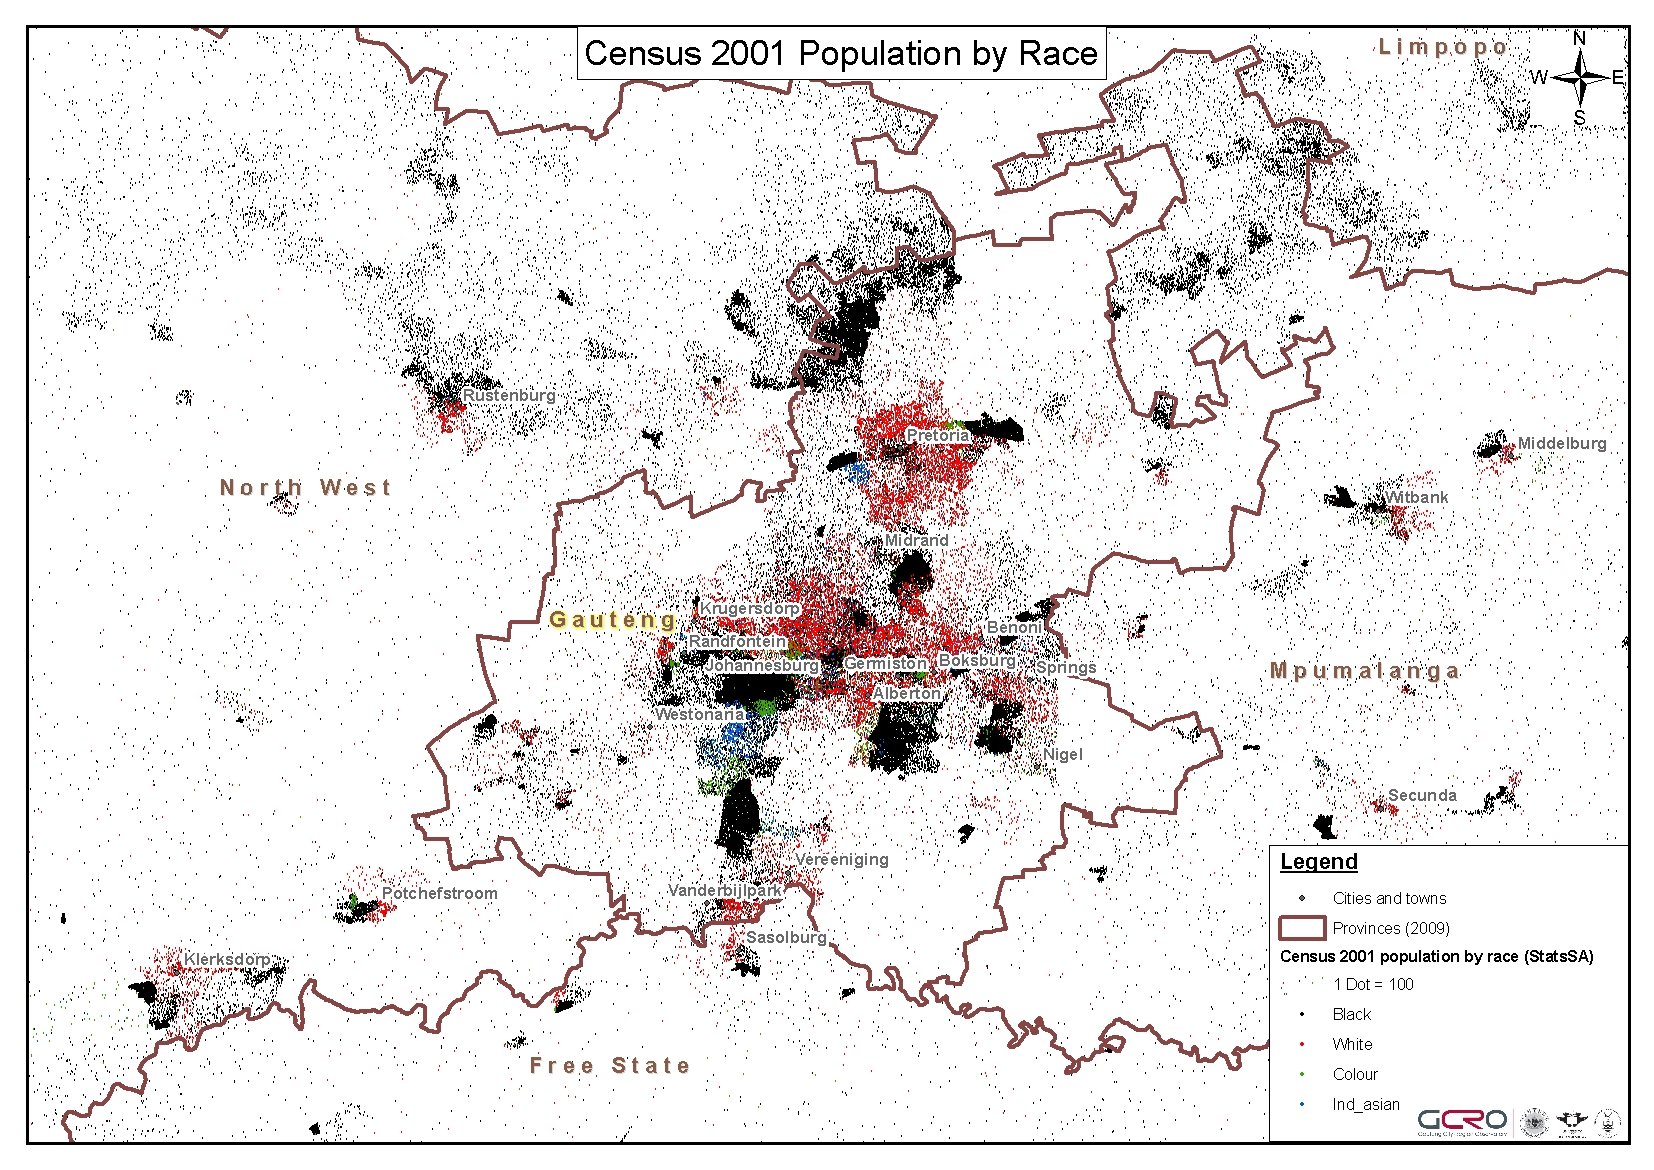 GCRO_footprint_census_2001_2009wards_Population_dot_density_race